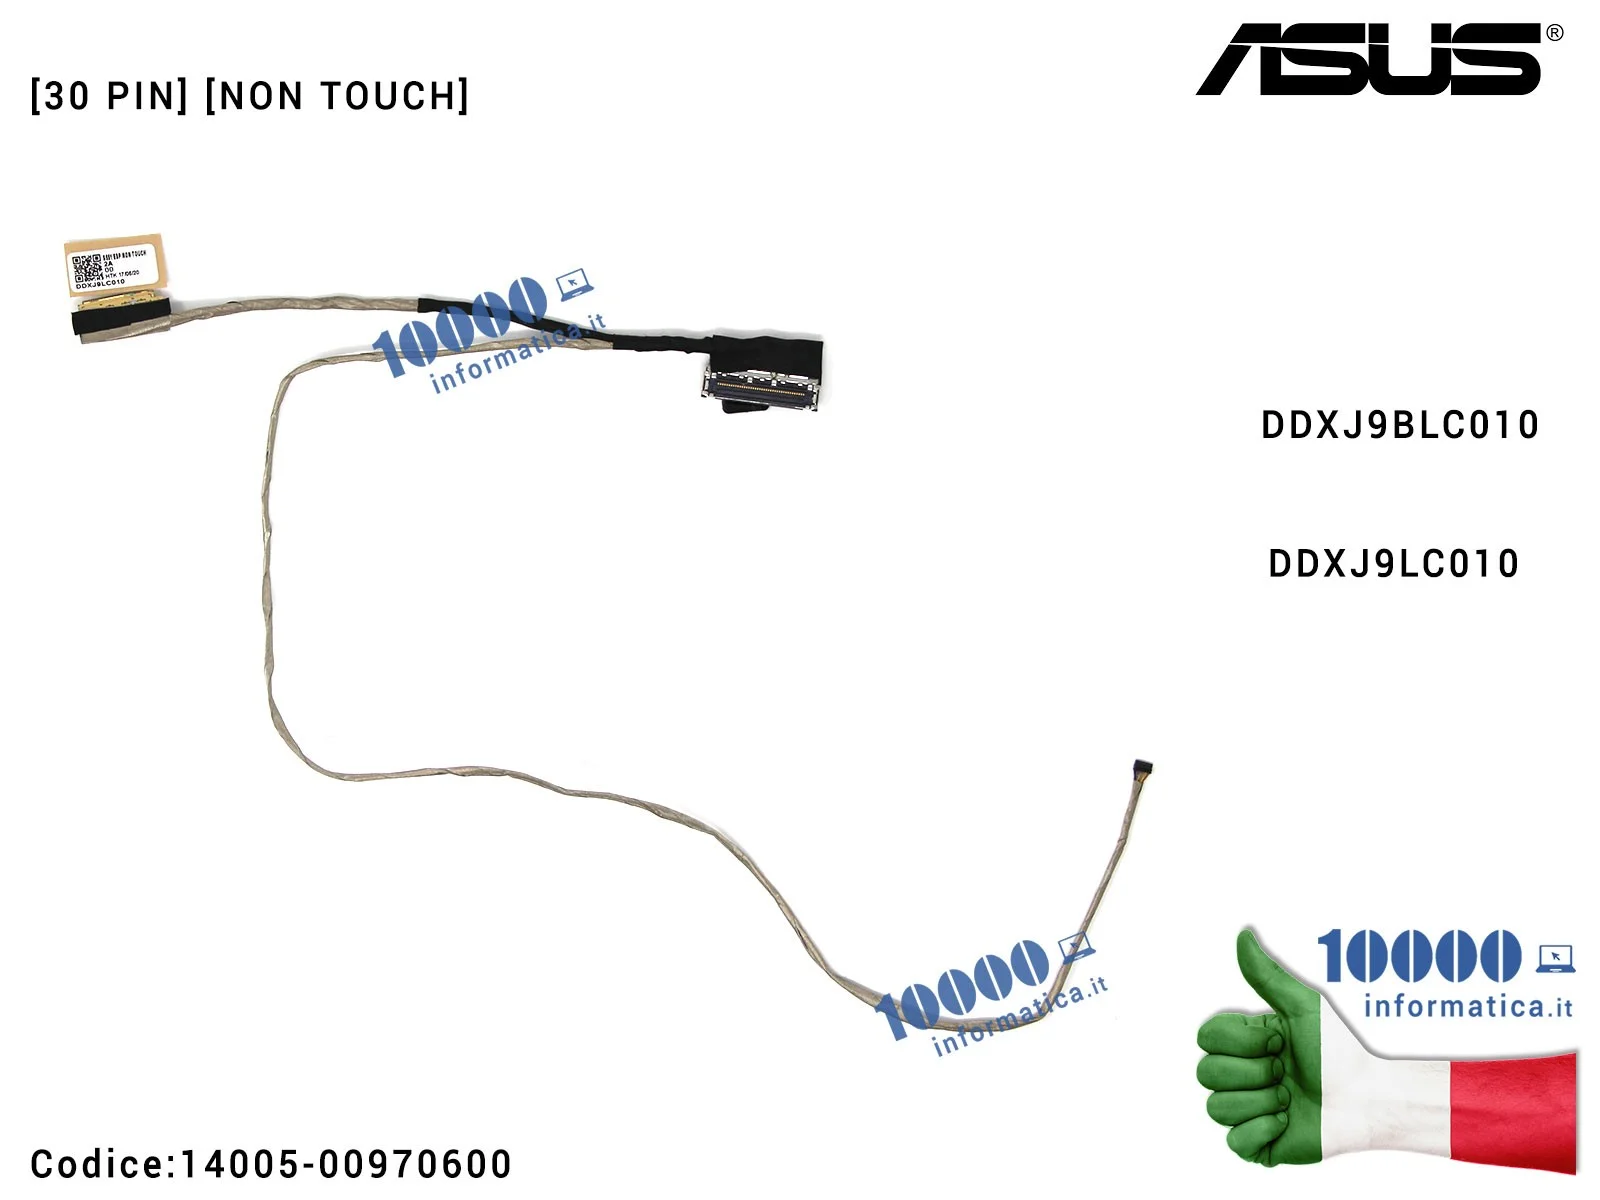 14005-00970600 Cavo Flat LCD ASUS [30 PIN] [NON TOUCH] A551L S551 K551 S551L K551L S551LA S551LB S551LN V551 DDXJ9BLC010 DDXJ...